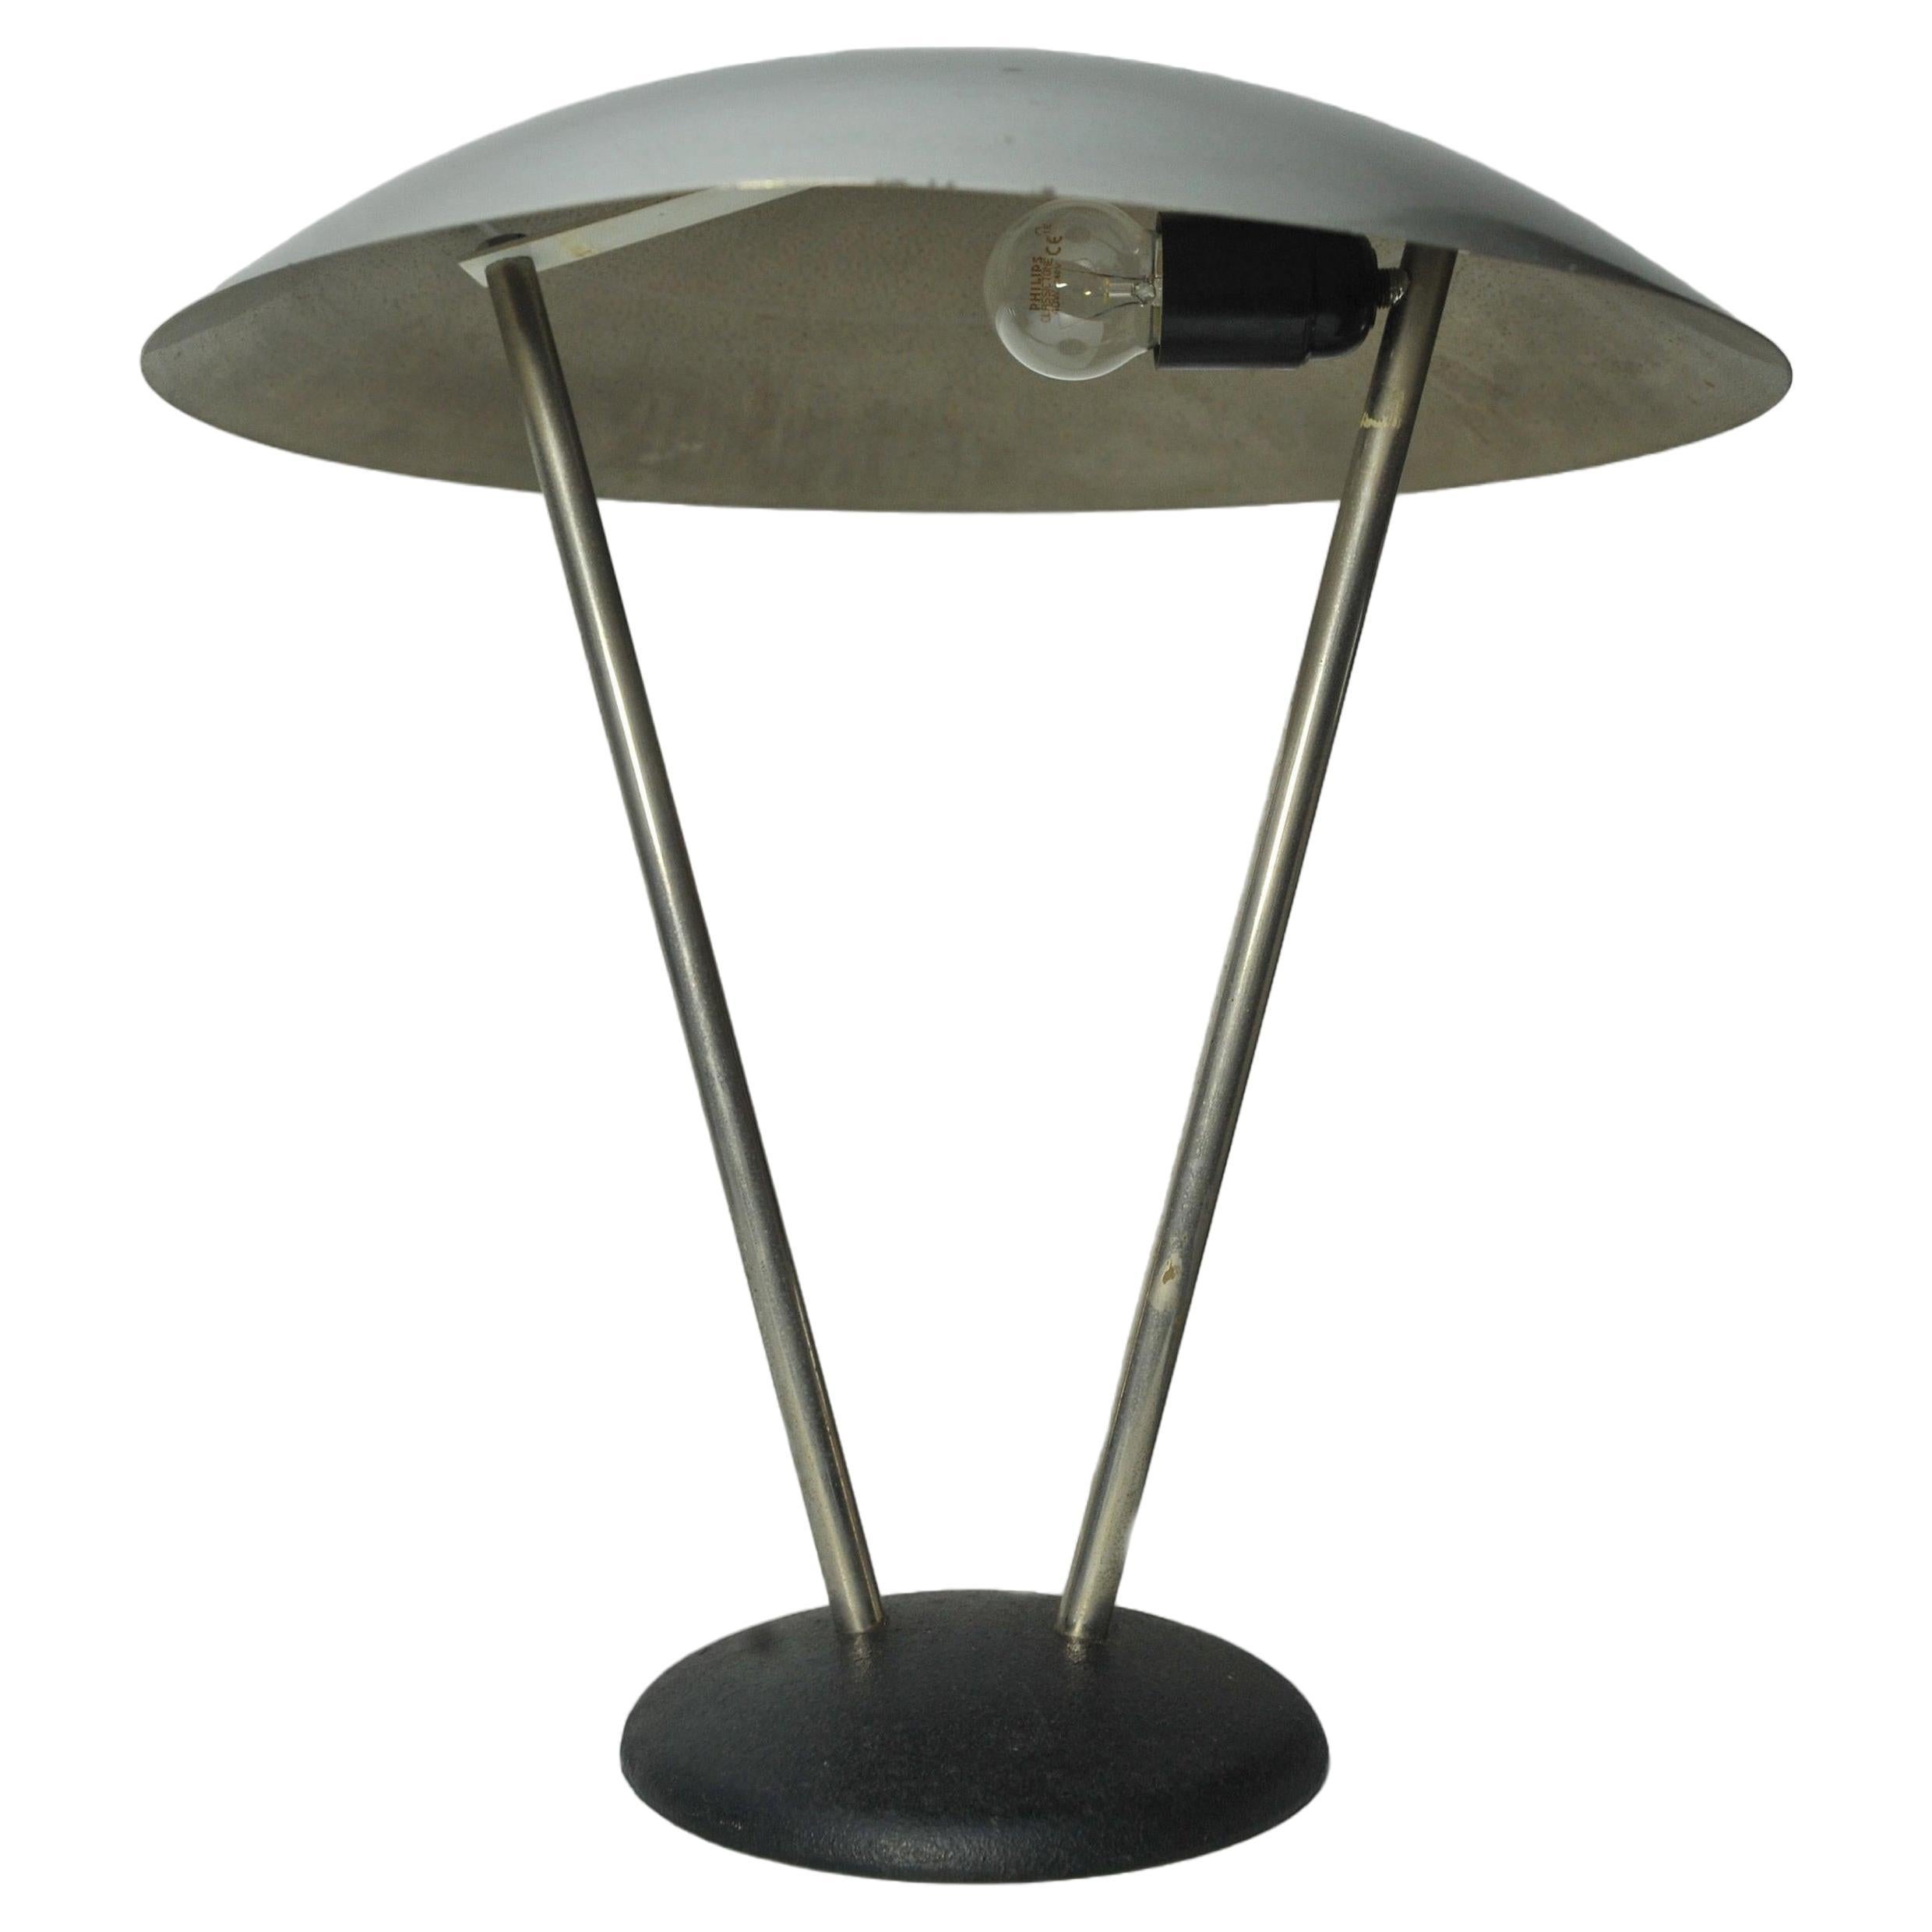 Lampe de table en acier atomique du Bauhaus des années 1920 à la manière de KMB Daalderop. 

Lampe très bien fabriquée, de poids élevé, idéale pour un décor d'époque ou moderne en raison de ses lignes épurées et de sa couleur. 
 
Diamètre de la base